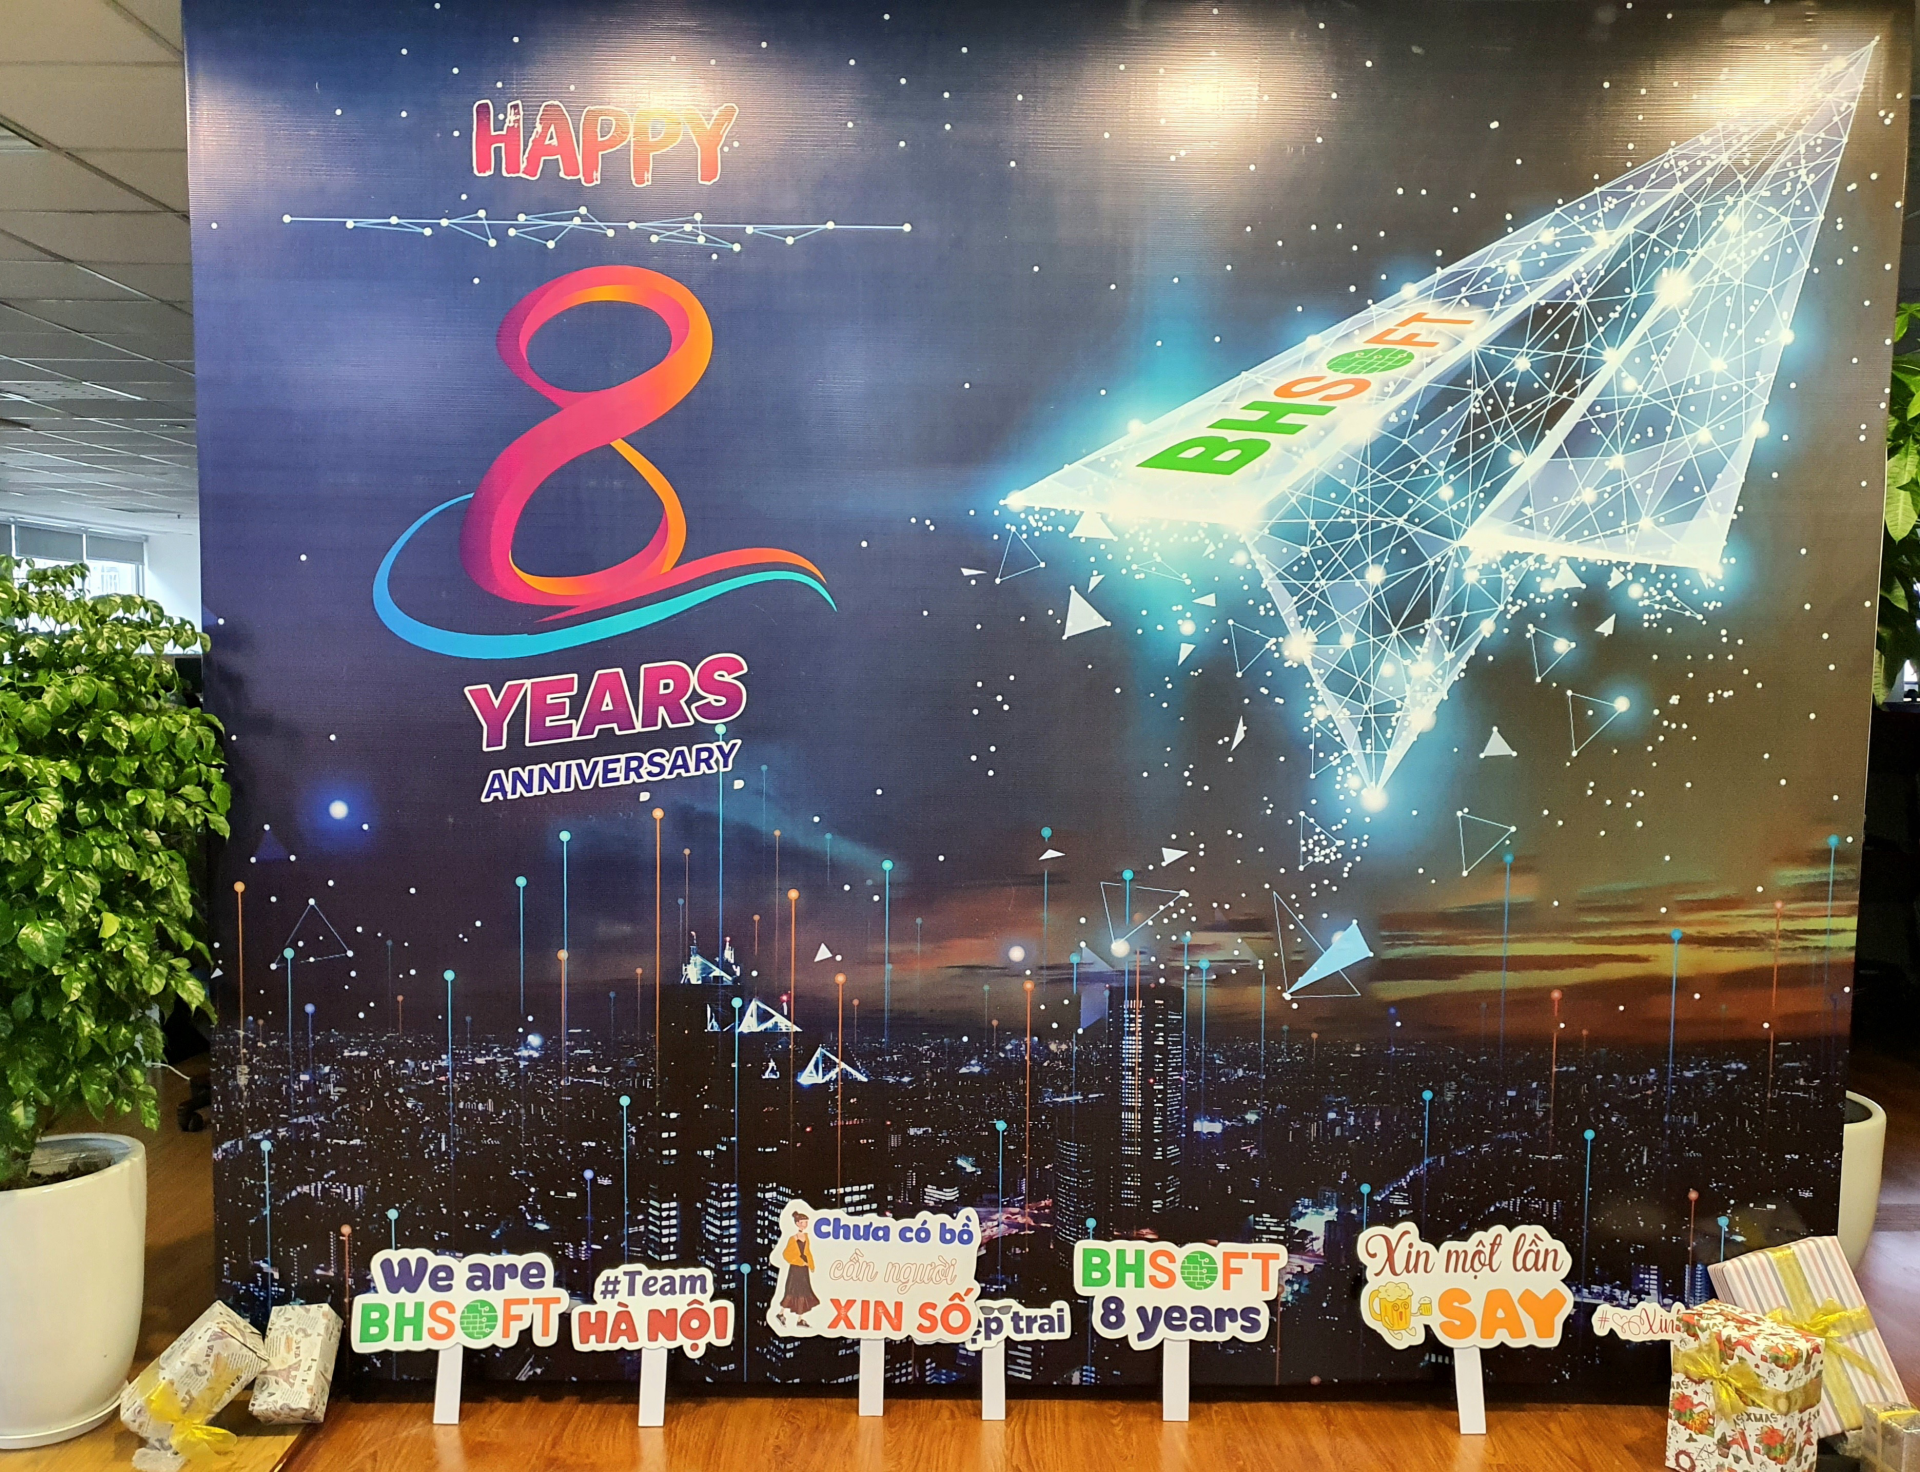 BHSoft – 8 Years Happy Anniversary!